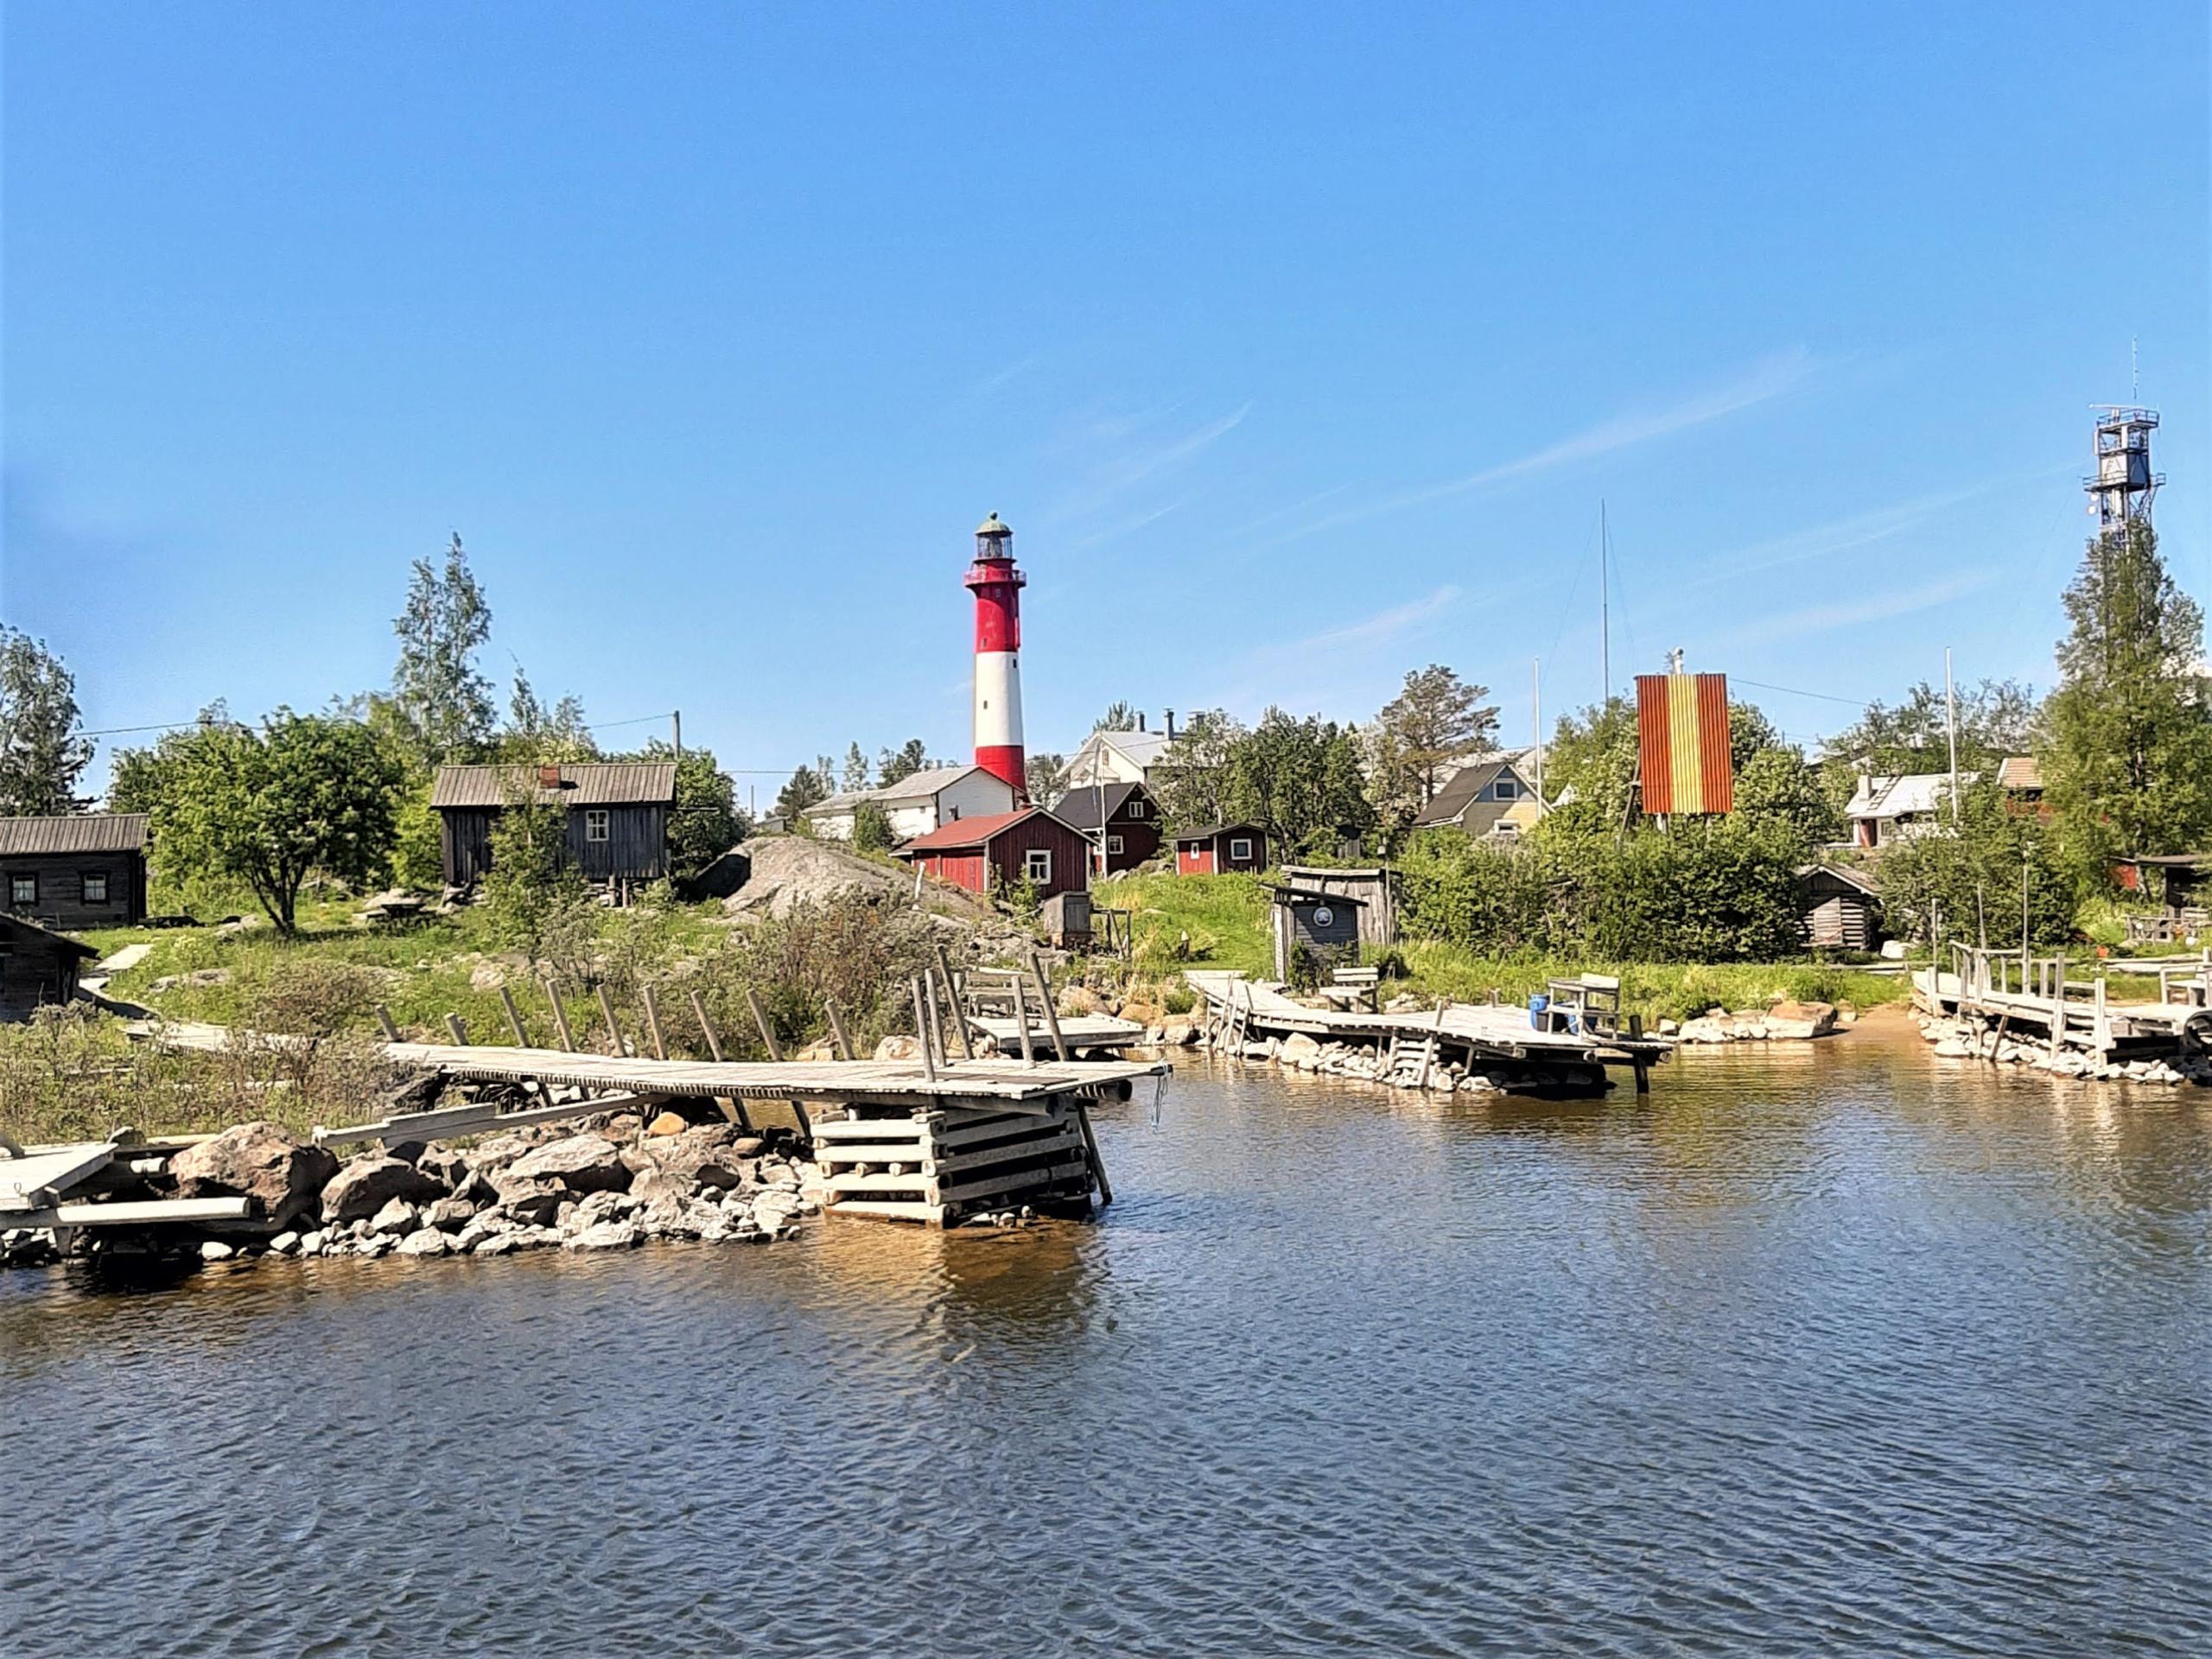 Vanha kalastajakylä kesällä, rantaviivassa kiviröykkiöille perustettuja vähän vinksottavia puulaitureita, taustalla rakennuksia ja keskellä kuvaa puna-valkoinen majakka.